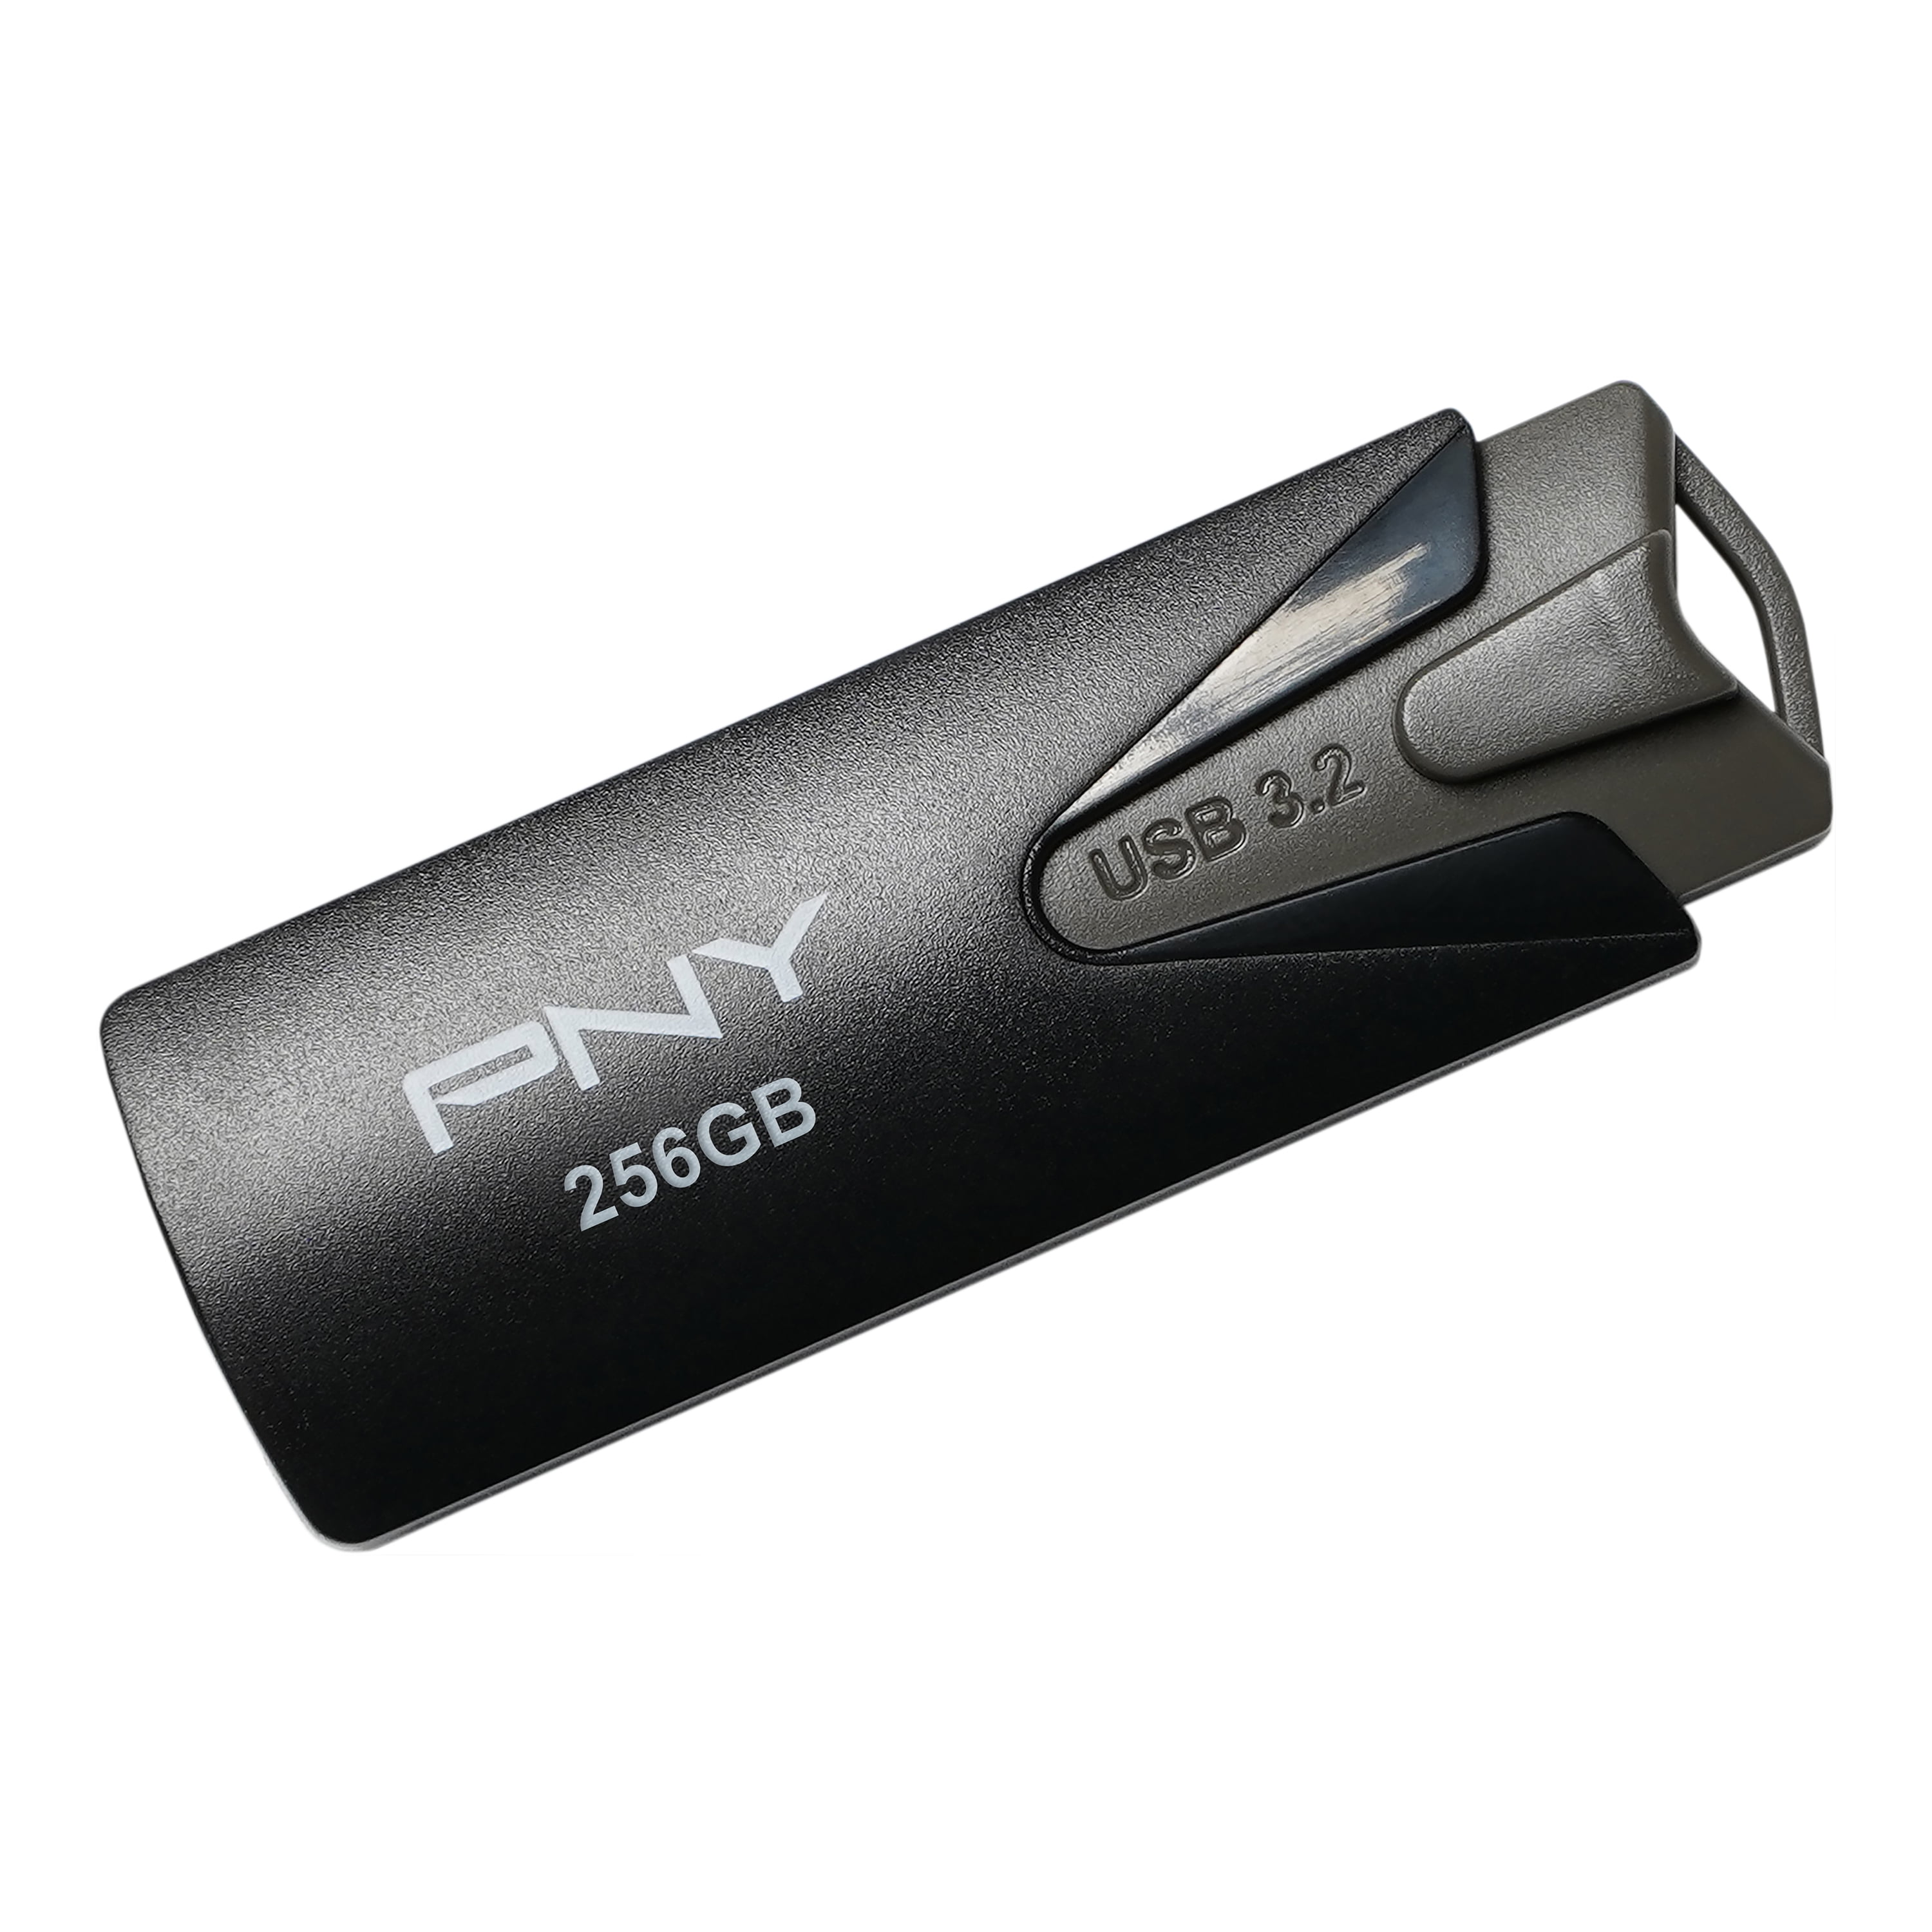 pny 256gb usb 3.0 flash drive problems